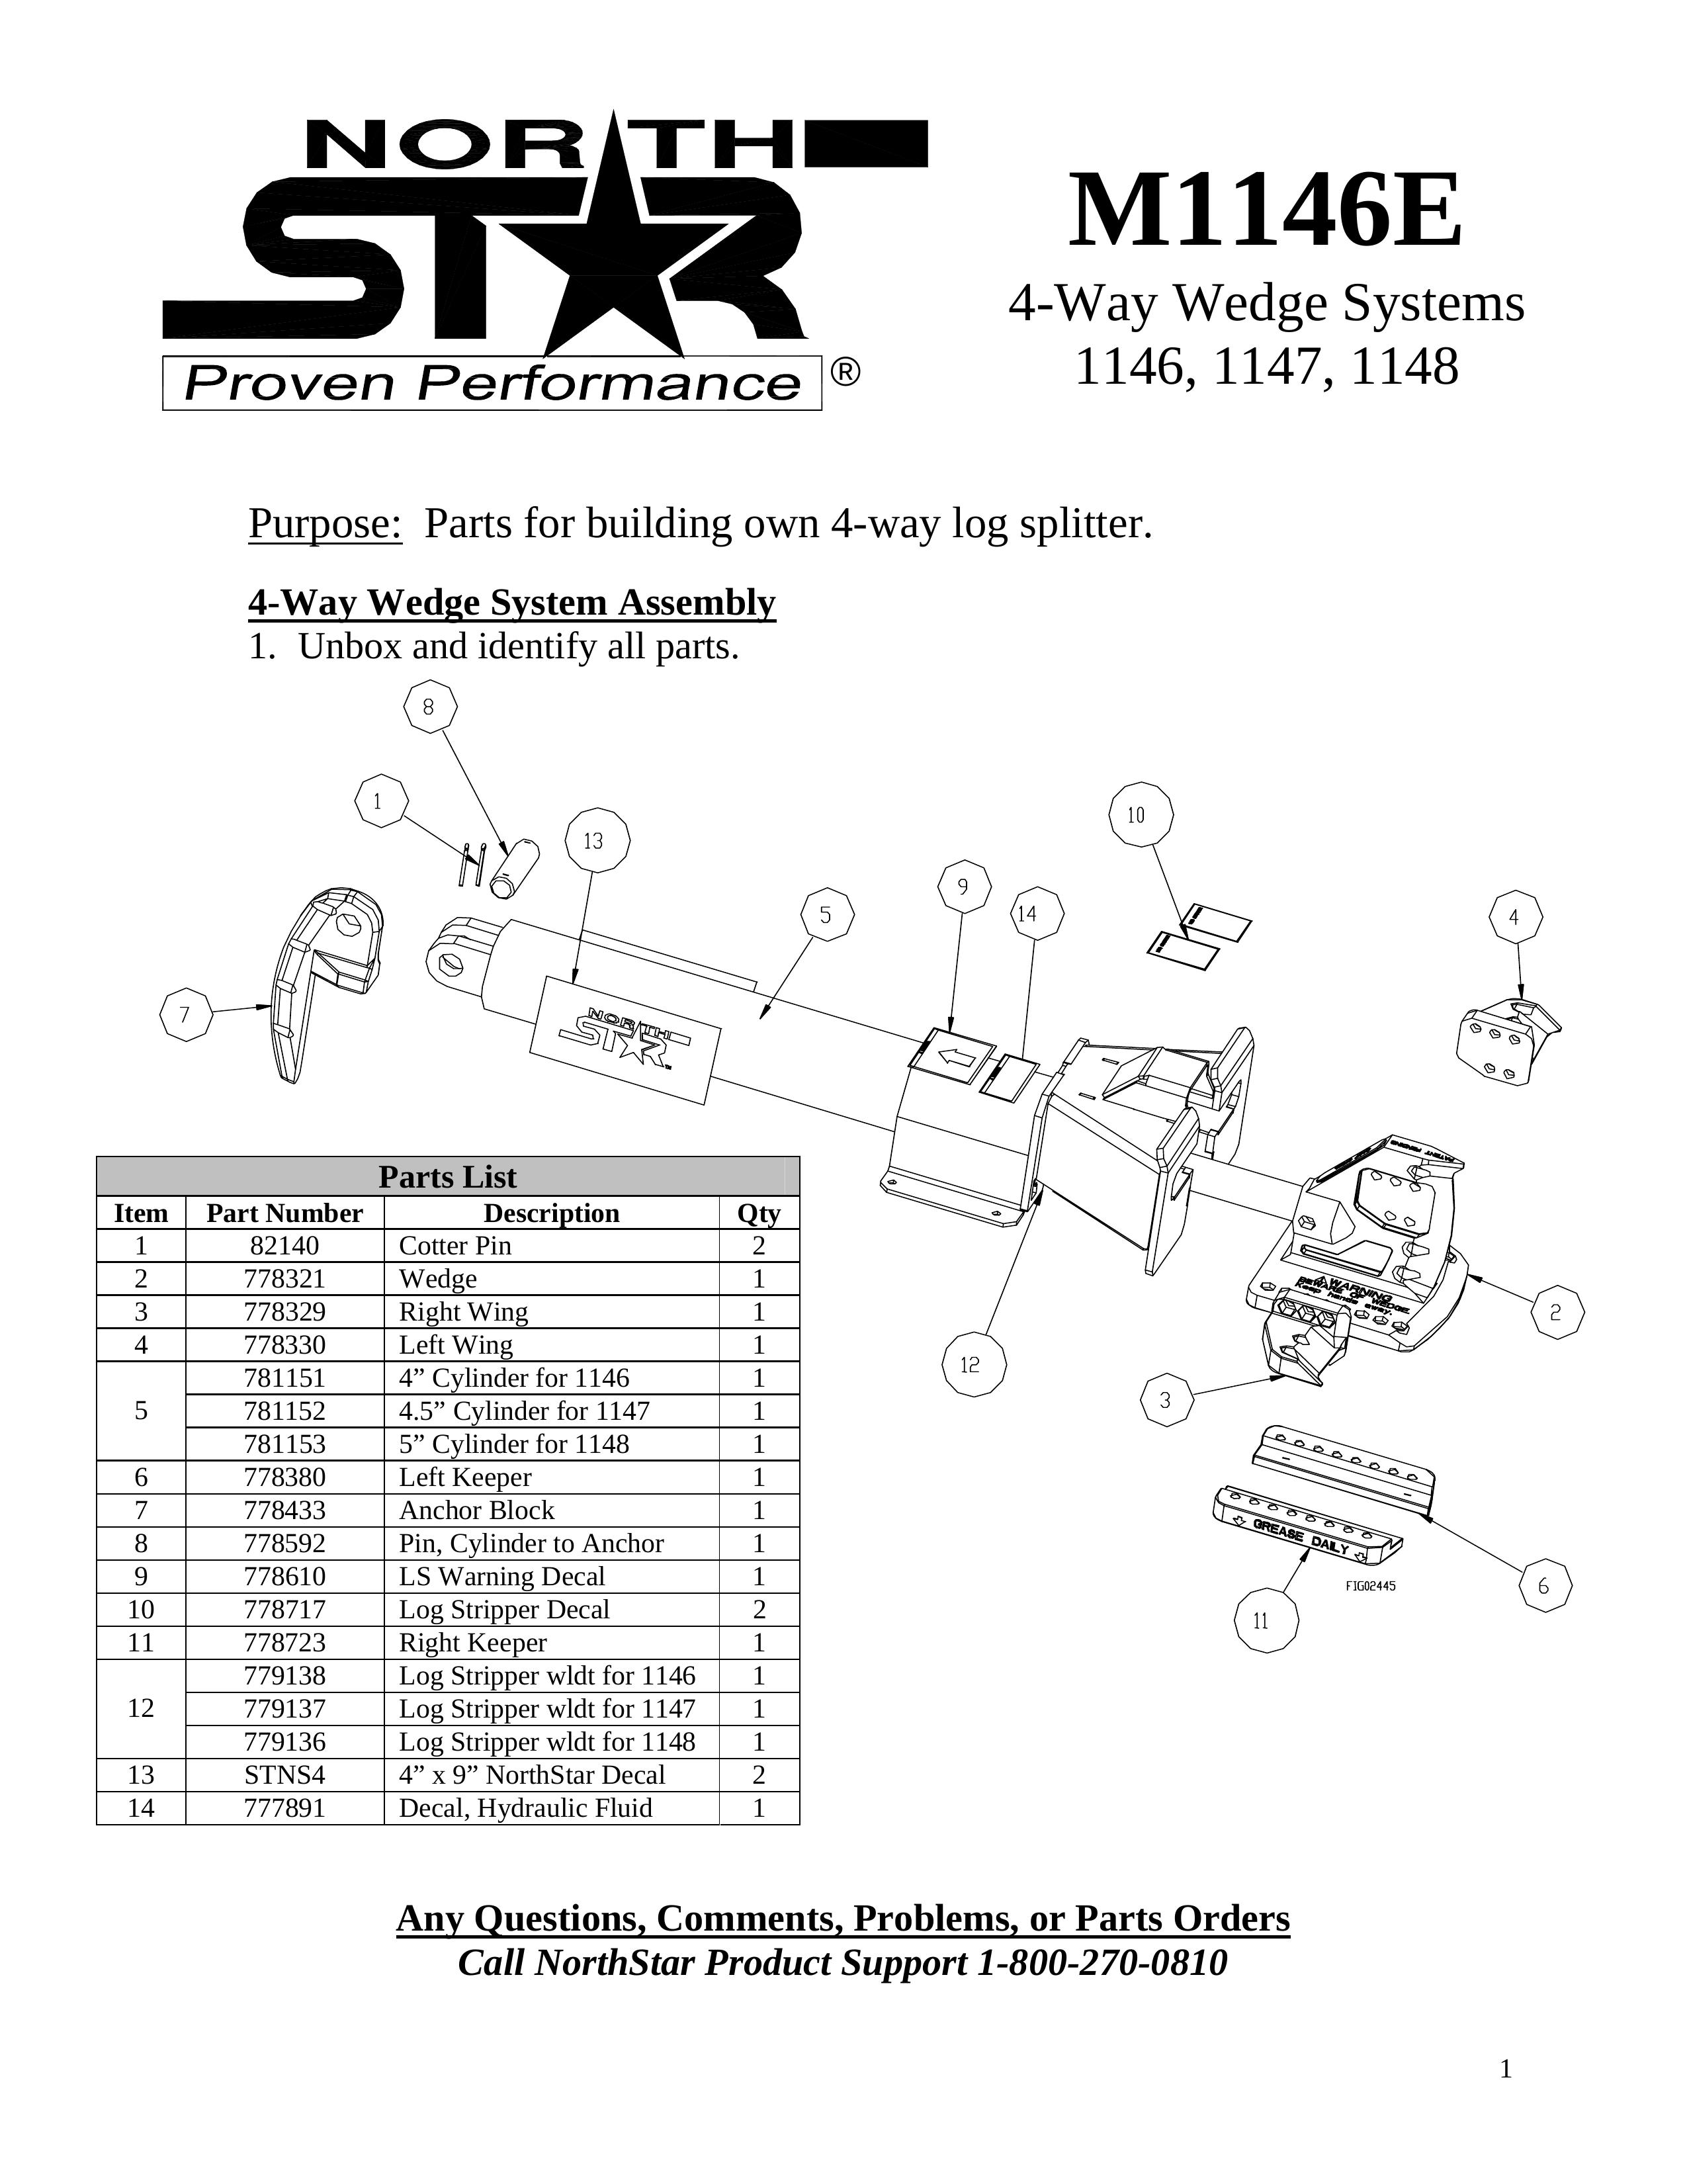 North Star M1146E Log Splitter User Manual